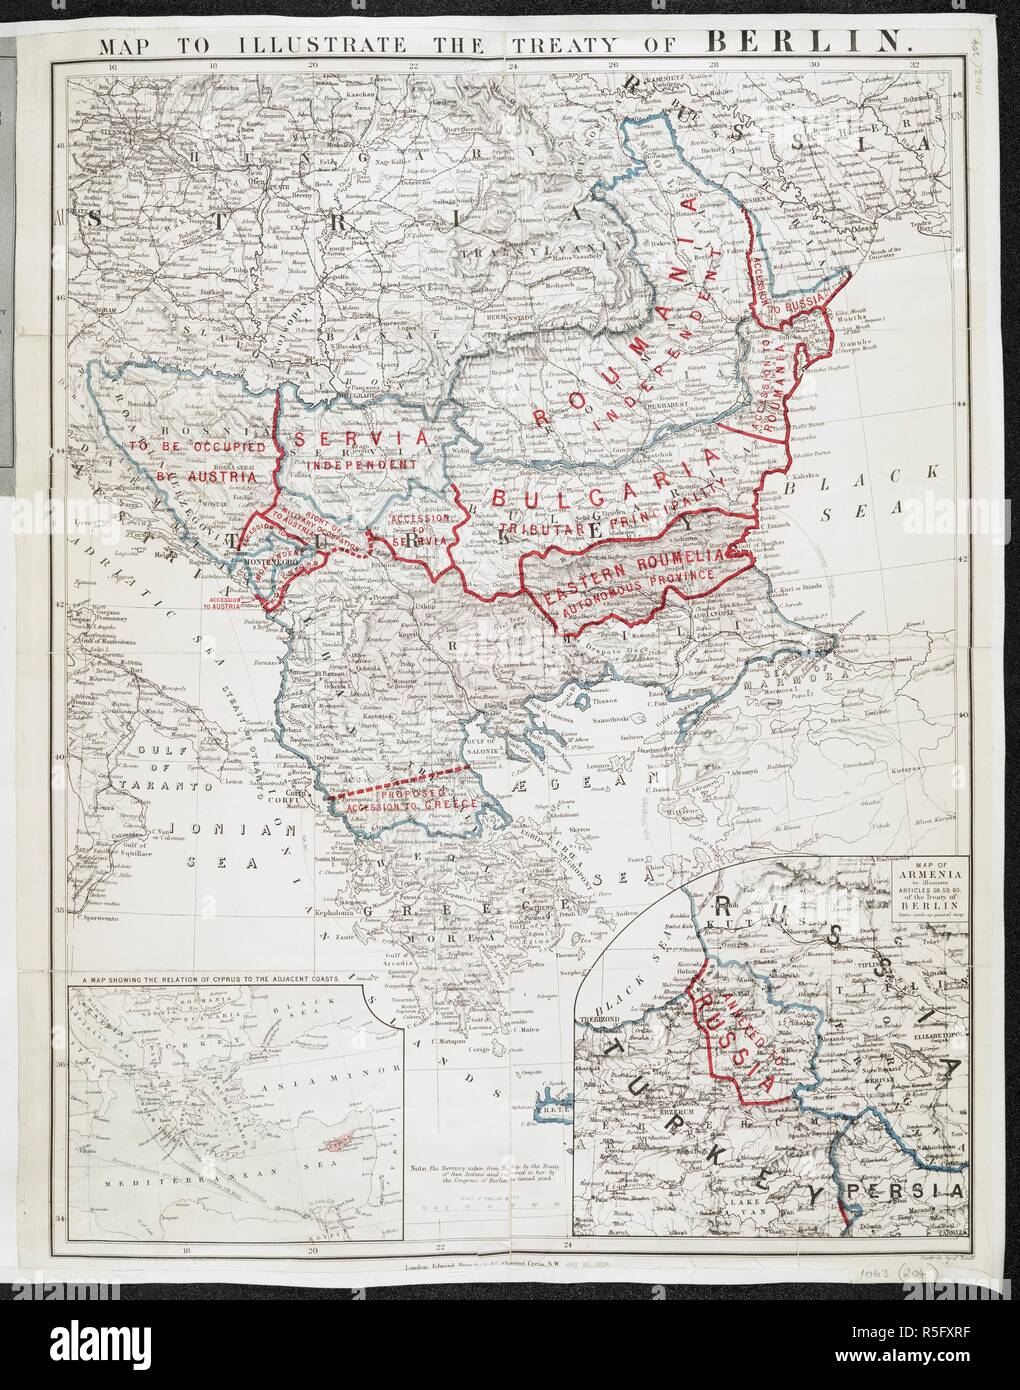 Un mapa para ilustrar el tratado de Berlín. Mapa para ilustrar el tratado de Berlín. Londres : Edward Stanford, 1878. Fuente: Mapas 1063.(204). Idioma: Inglés. Foto de stock